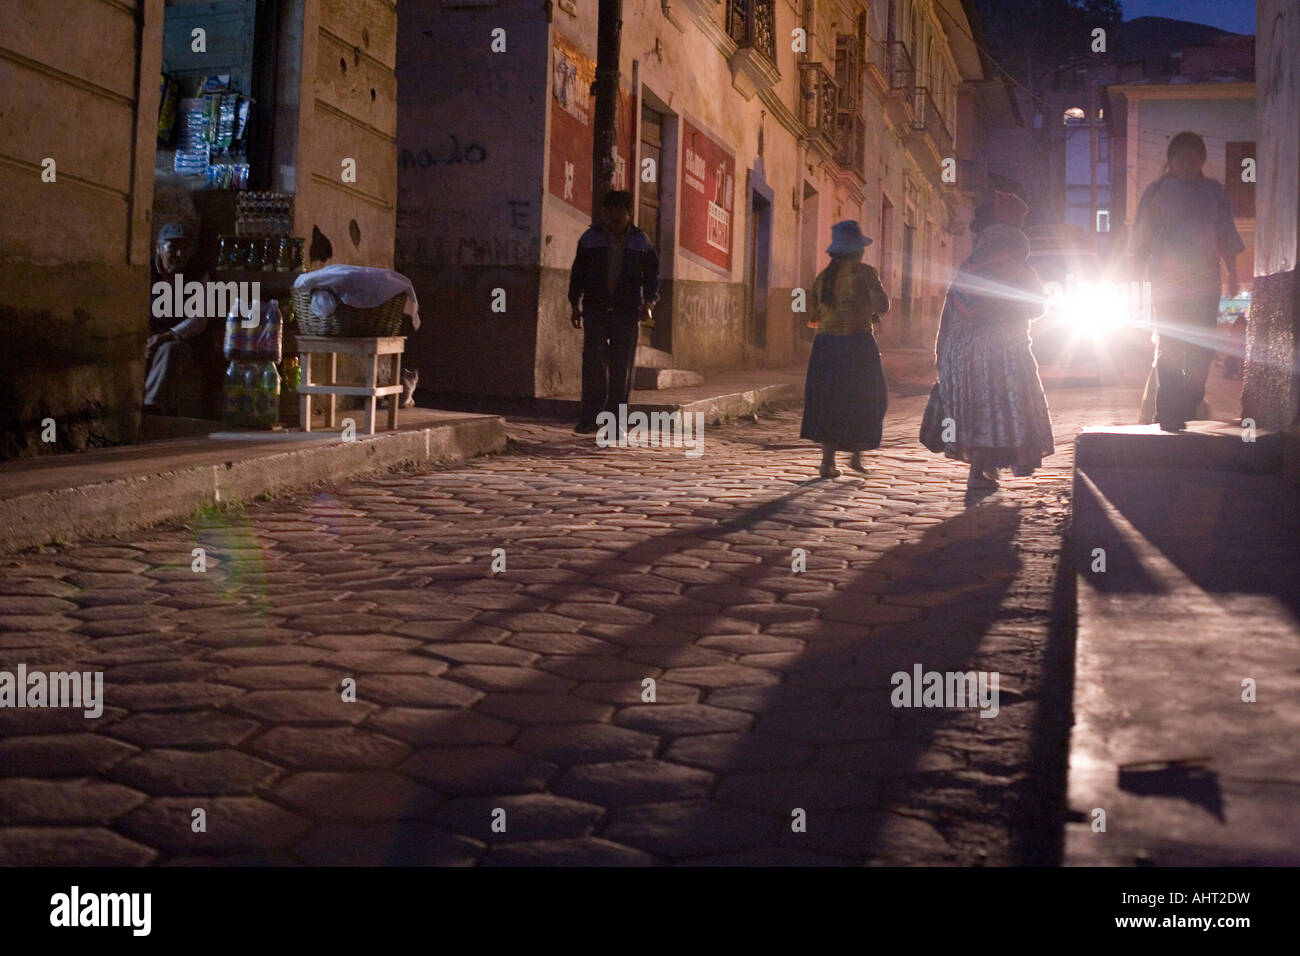 Sorata streets by night Stock Photo